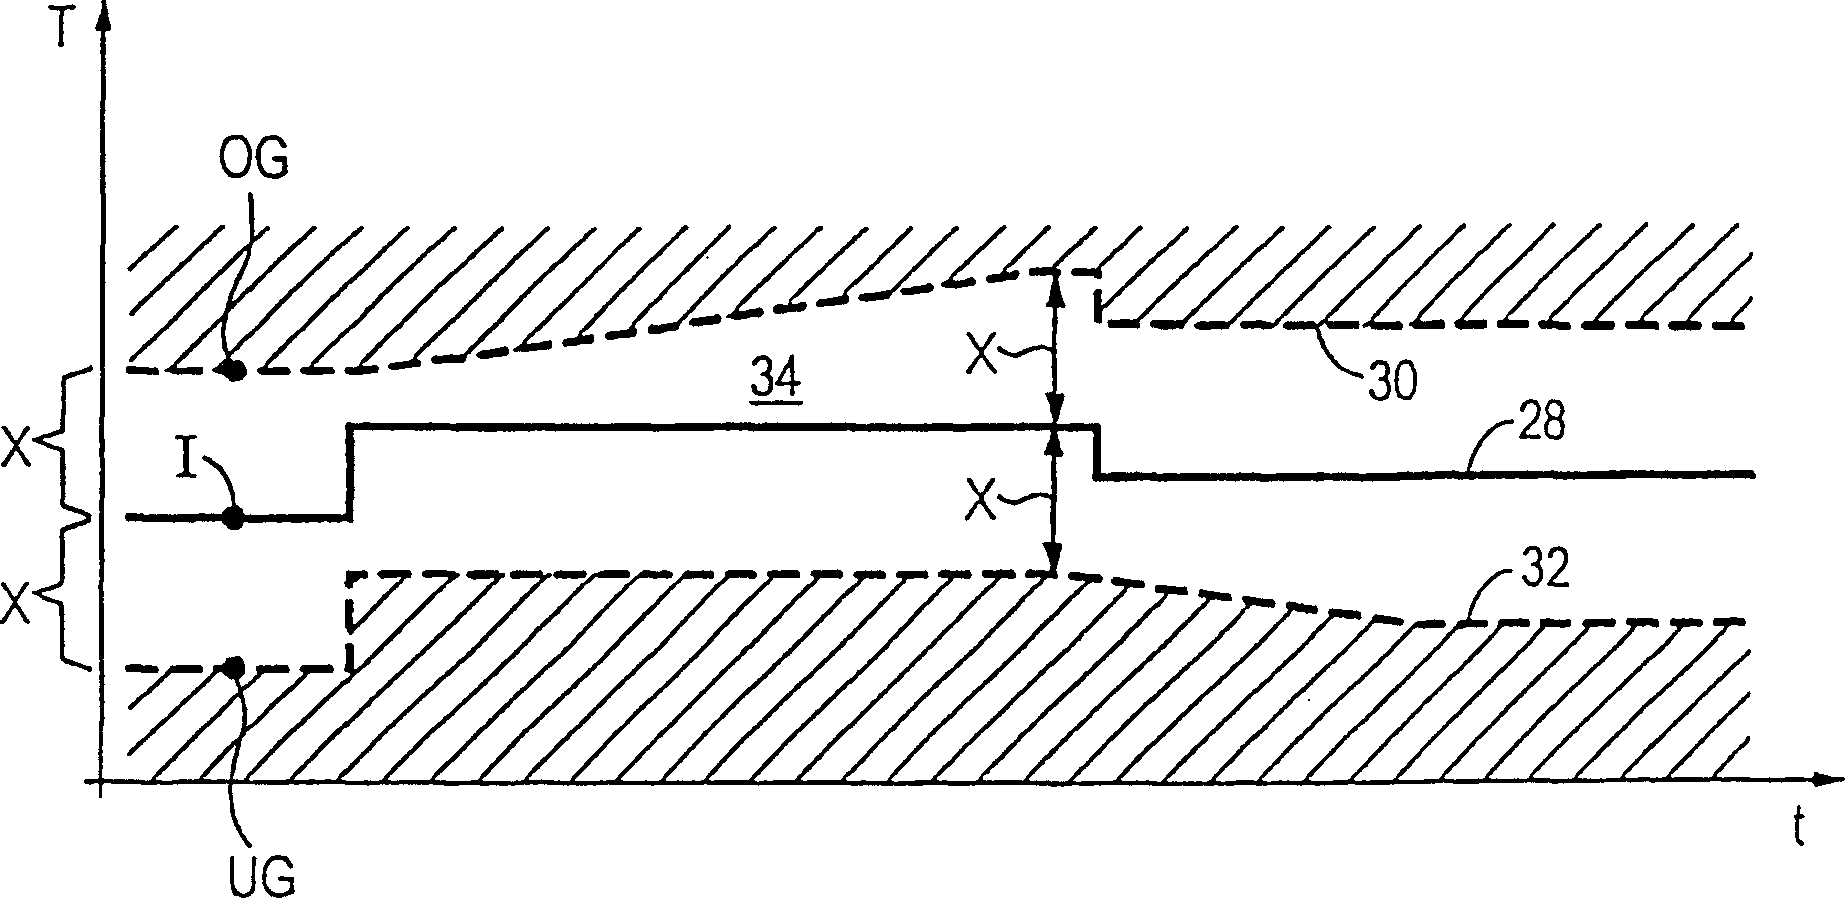 Method of turbine operation